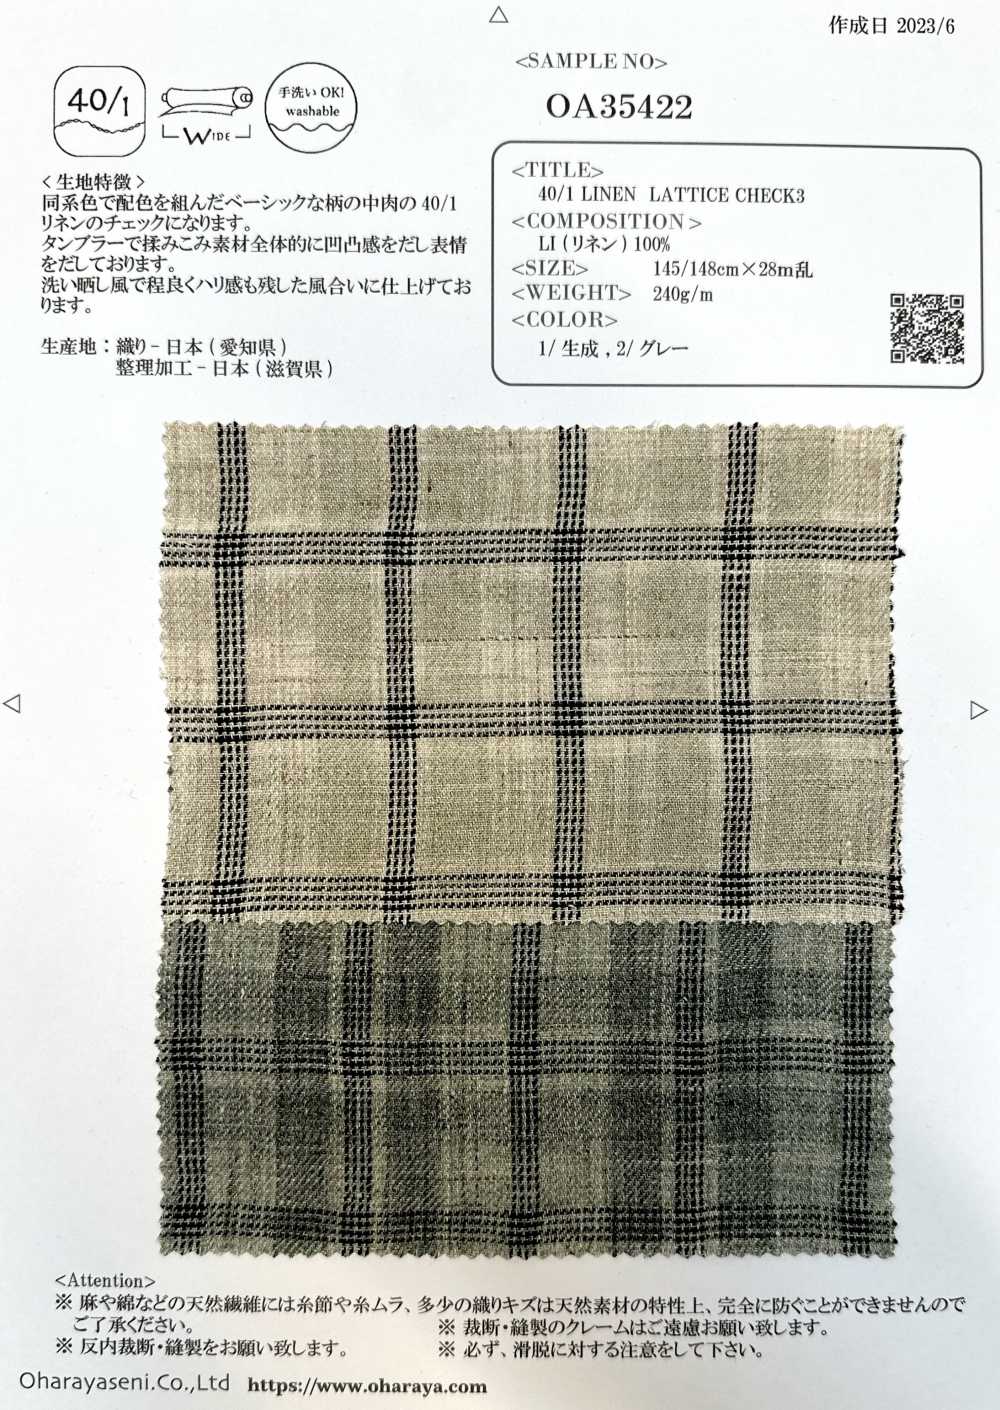 OA35422 40/1 LEINEN-GITTERKARIER3[Textilgewebe] Oharayaseni